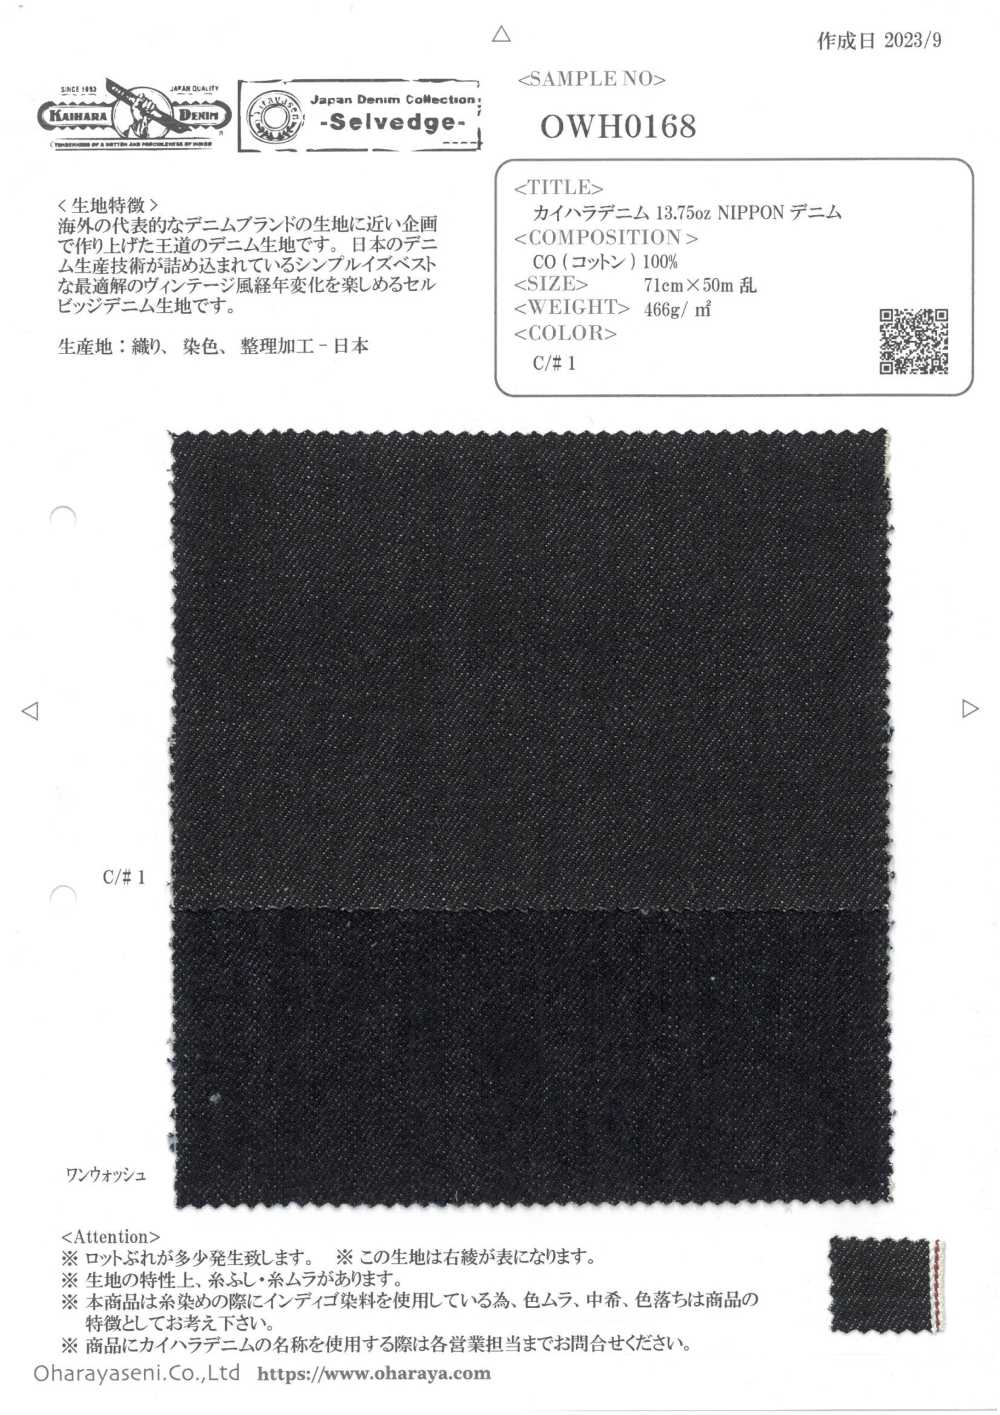 OWH0168 Kaihara Denim 13,75oz NIPPON Denim[Textilgewebe] Oharayaseni